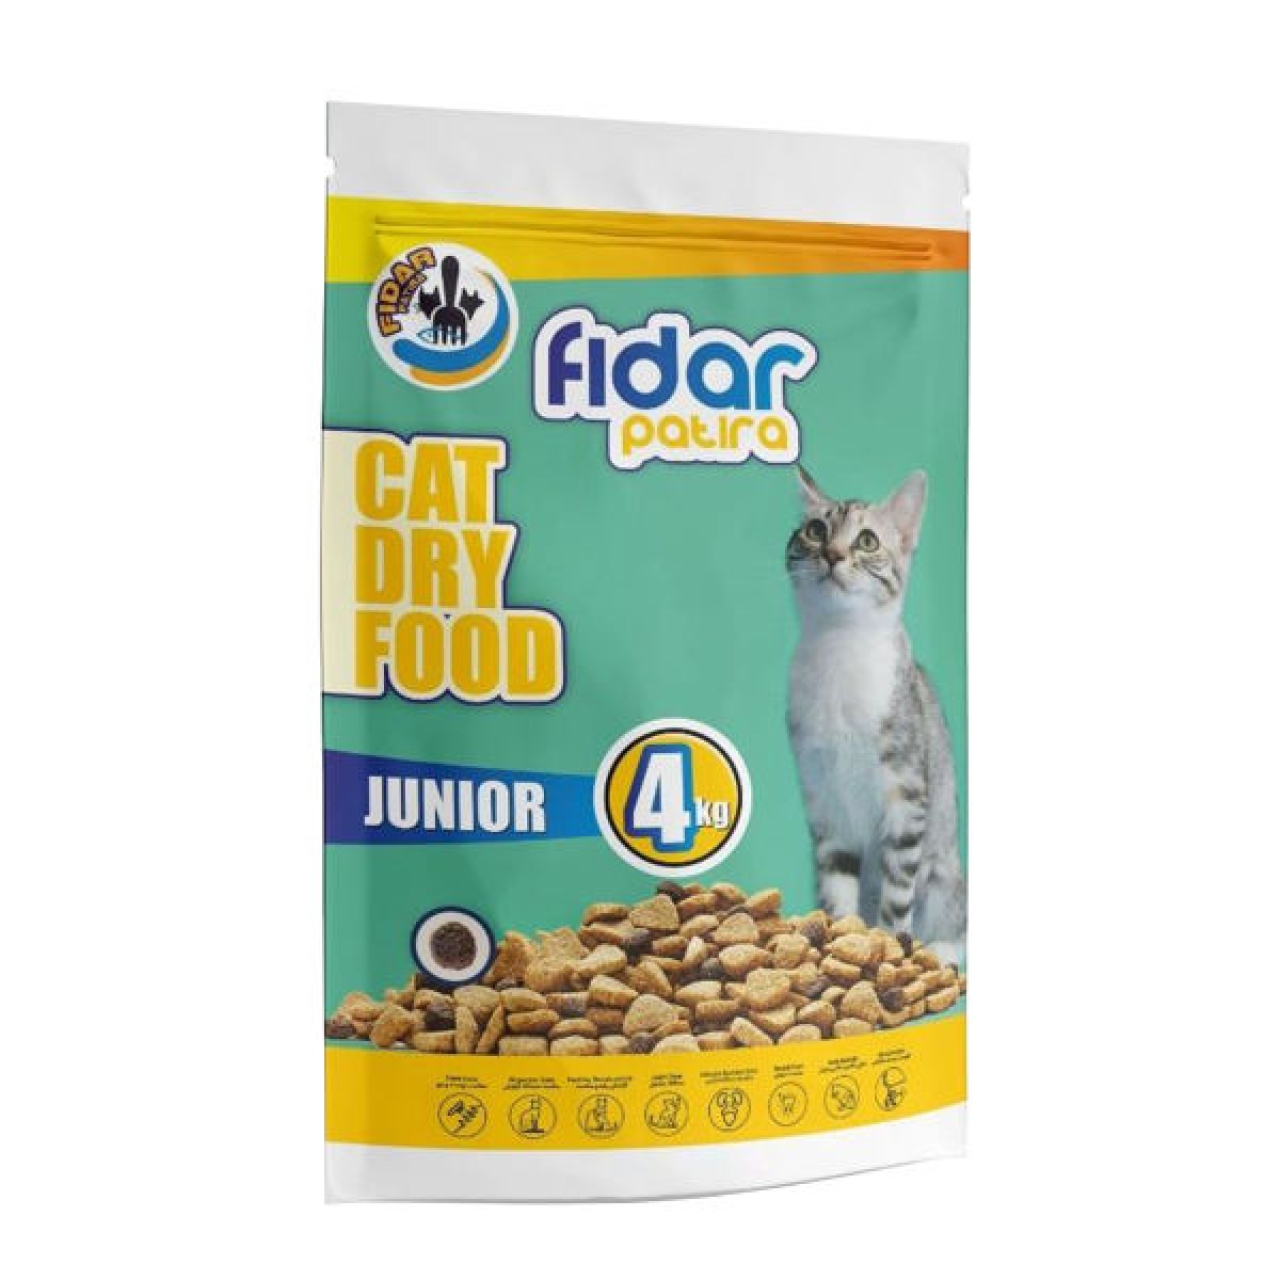 غذای خشک گربه فیدار پاتیرا مدل Junior  وزن 4 کیلوگرم